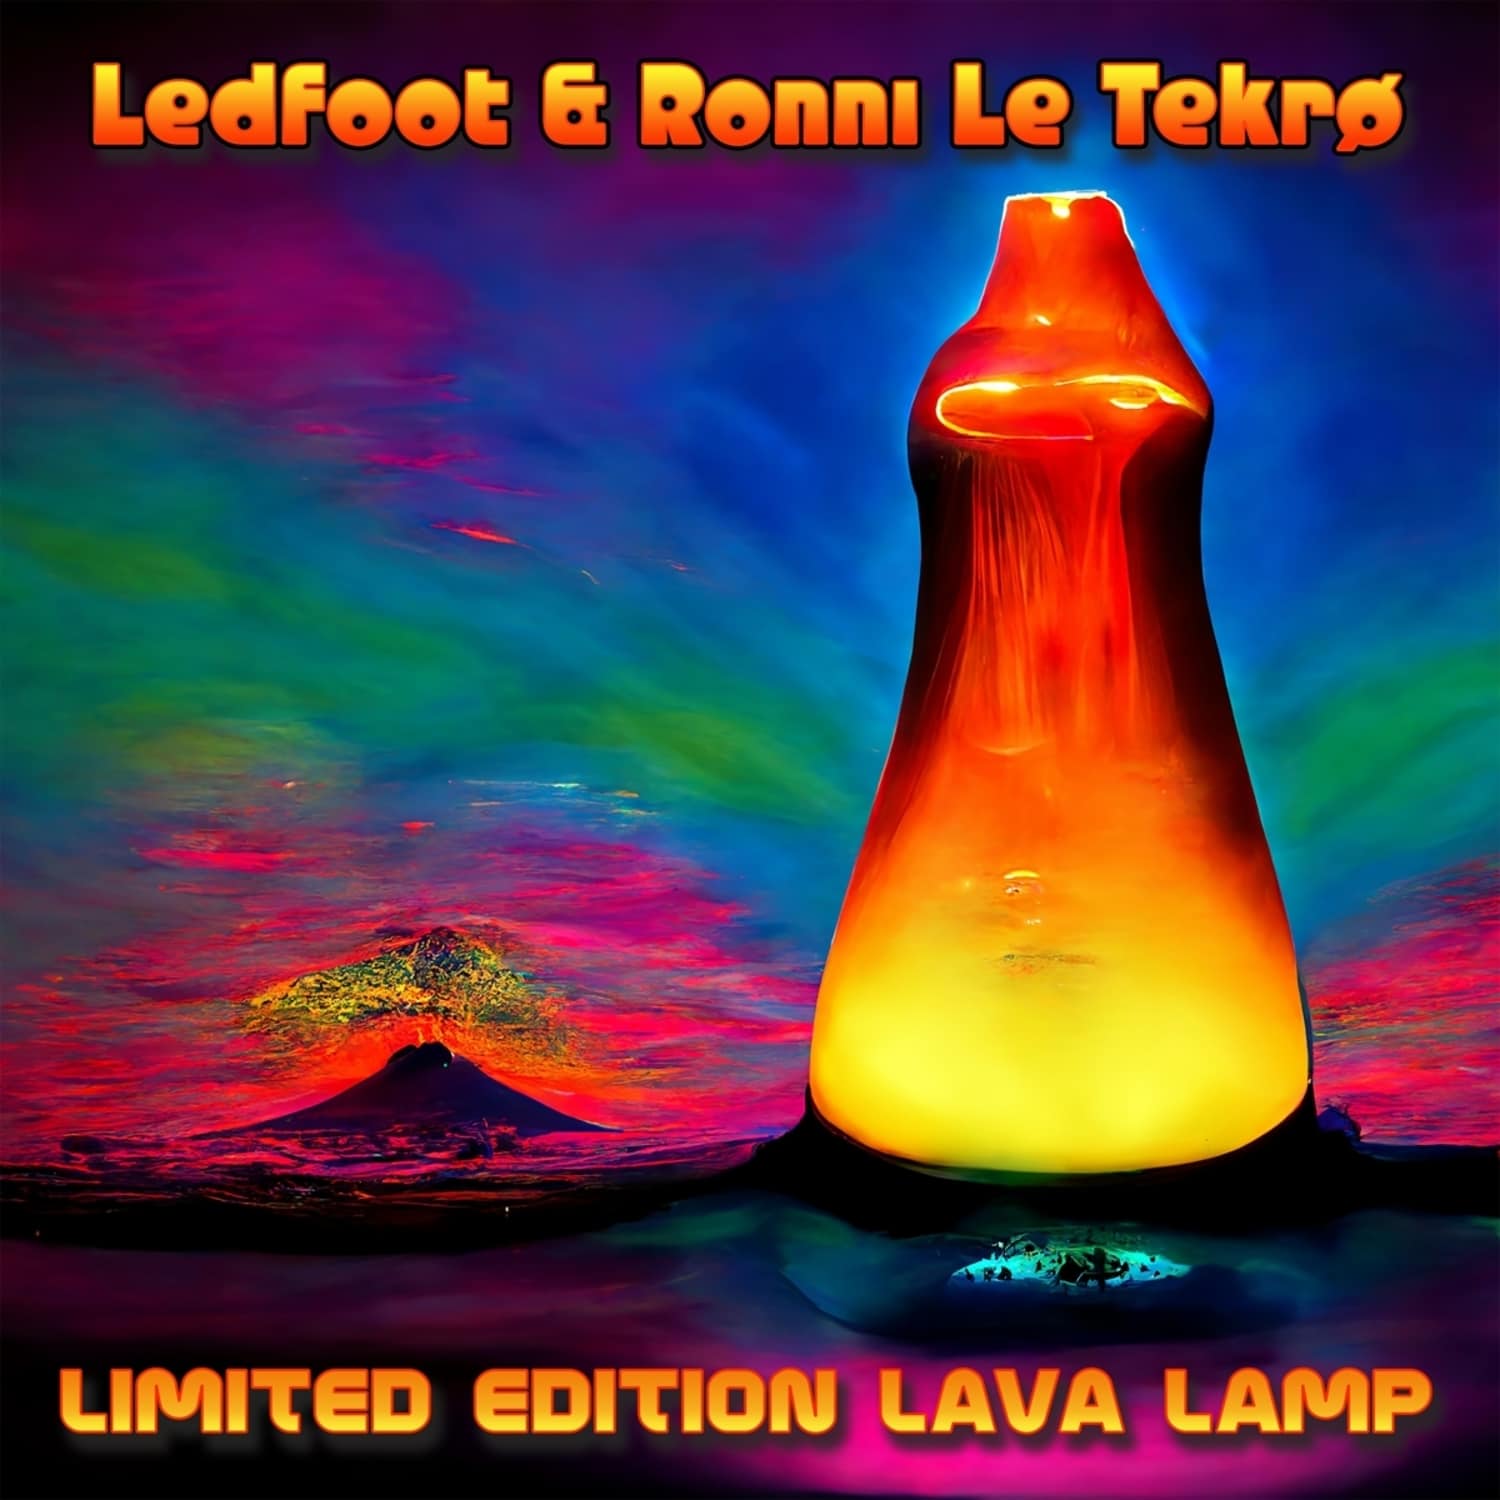 Ledfoot / Ronni Le Tekro - LIMITED ED LAVA LAMP 